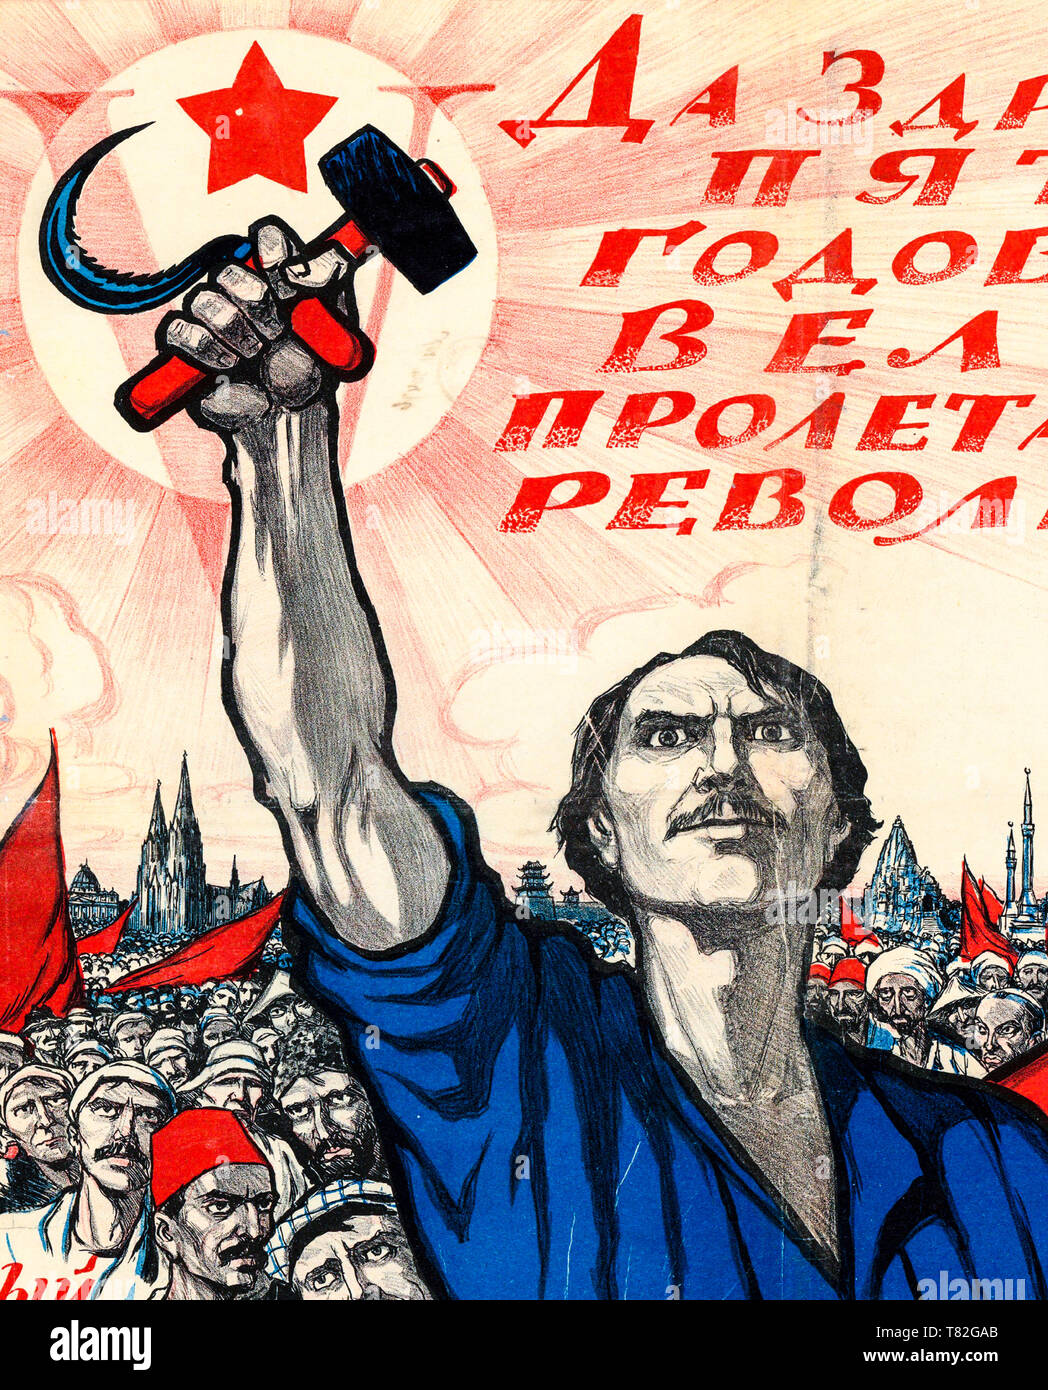 Affiche soviétique dédié à la 5e anniversaire de la révolution d'octobre et le quatrième Congrès de l'Internationale communiste (détail), 1922 Banque D'Images